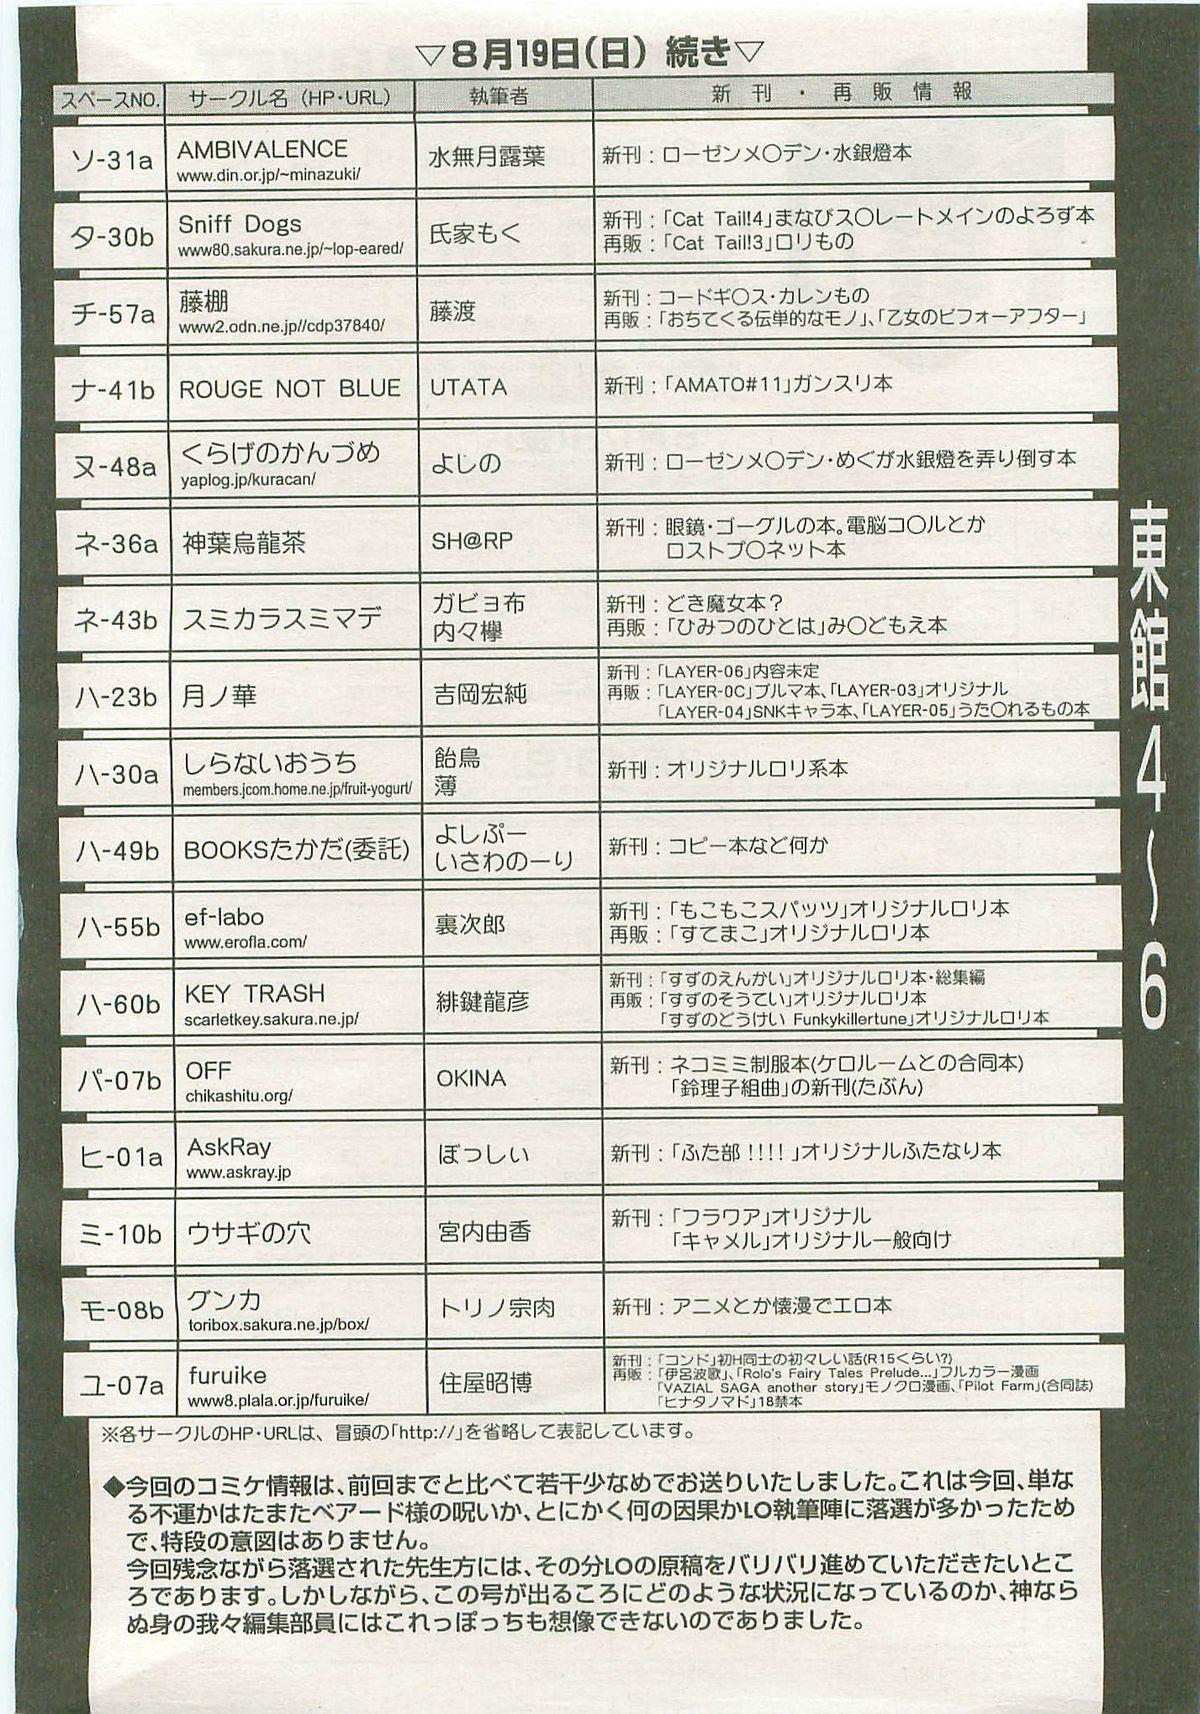 COMIC LO 2007年9月号 Vol.42